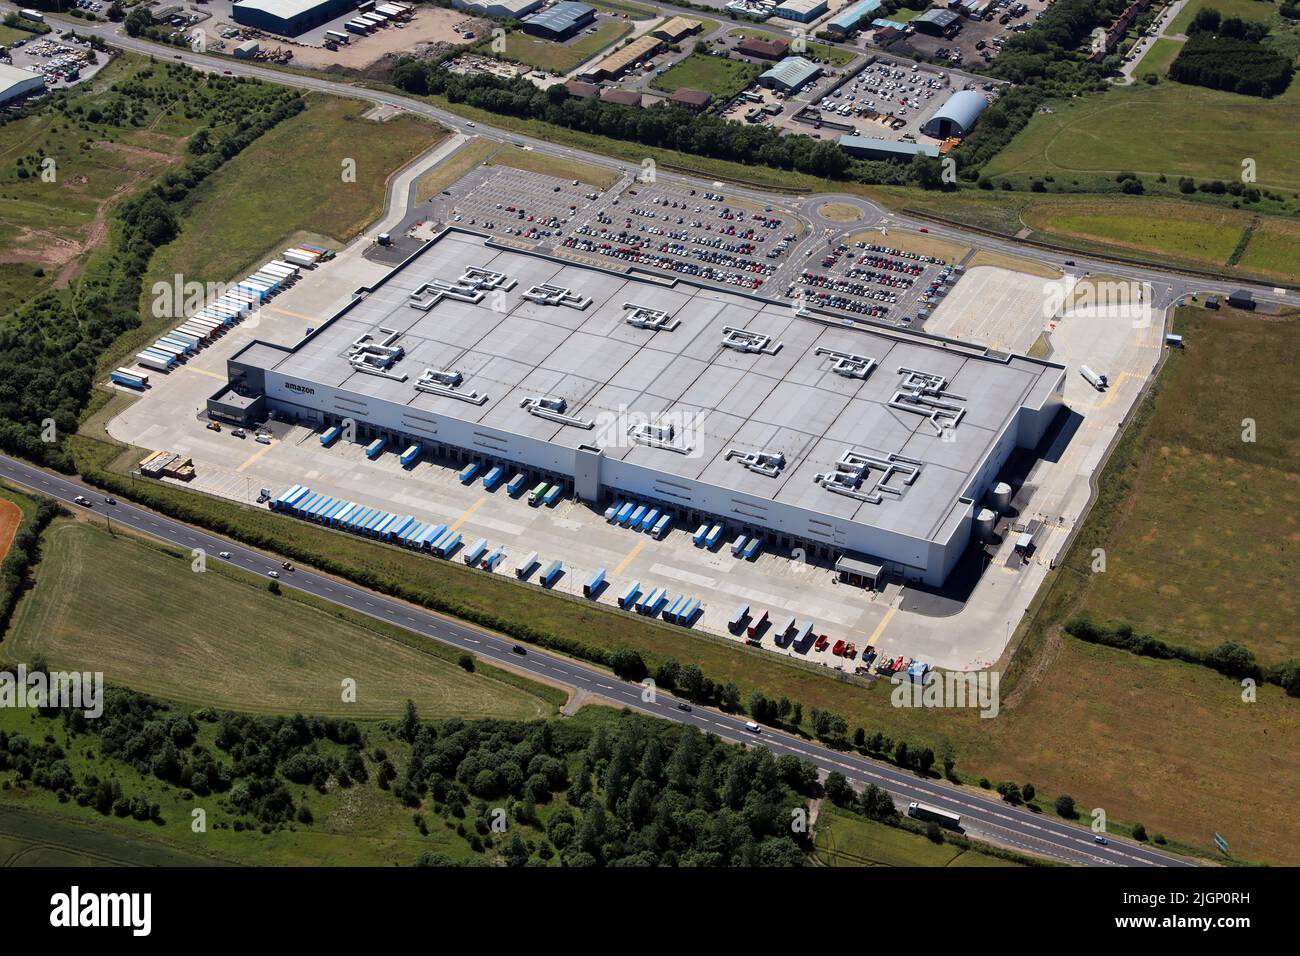 Vista aérea del almacén de Amazon UK Services MME1 en Darlington, condado de Durham. Esto muestra el lado este - la parte delantera del edificio con el A66. Foto de stock